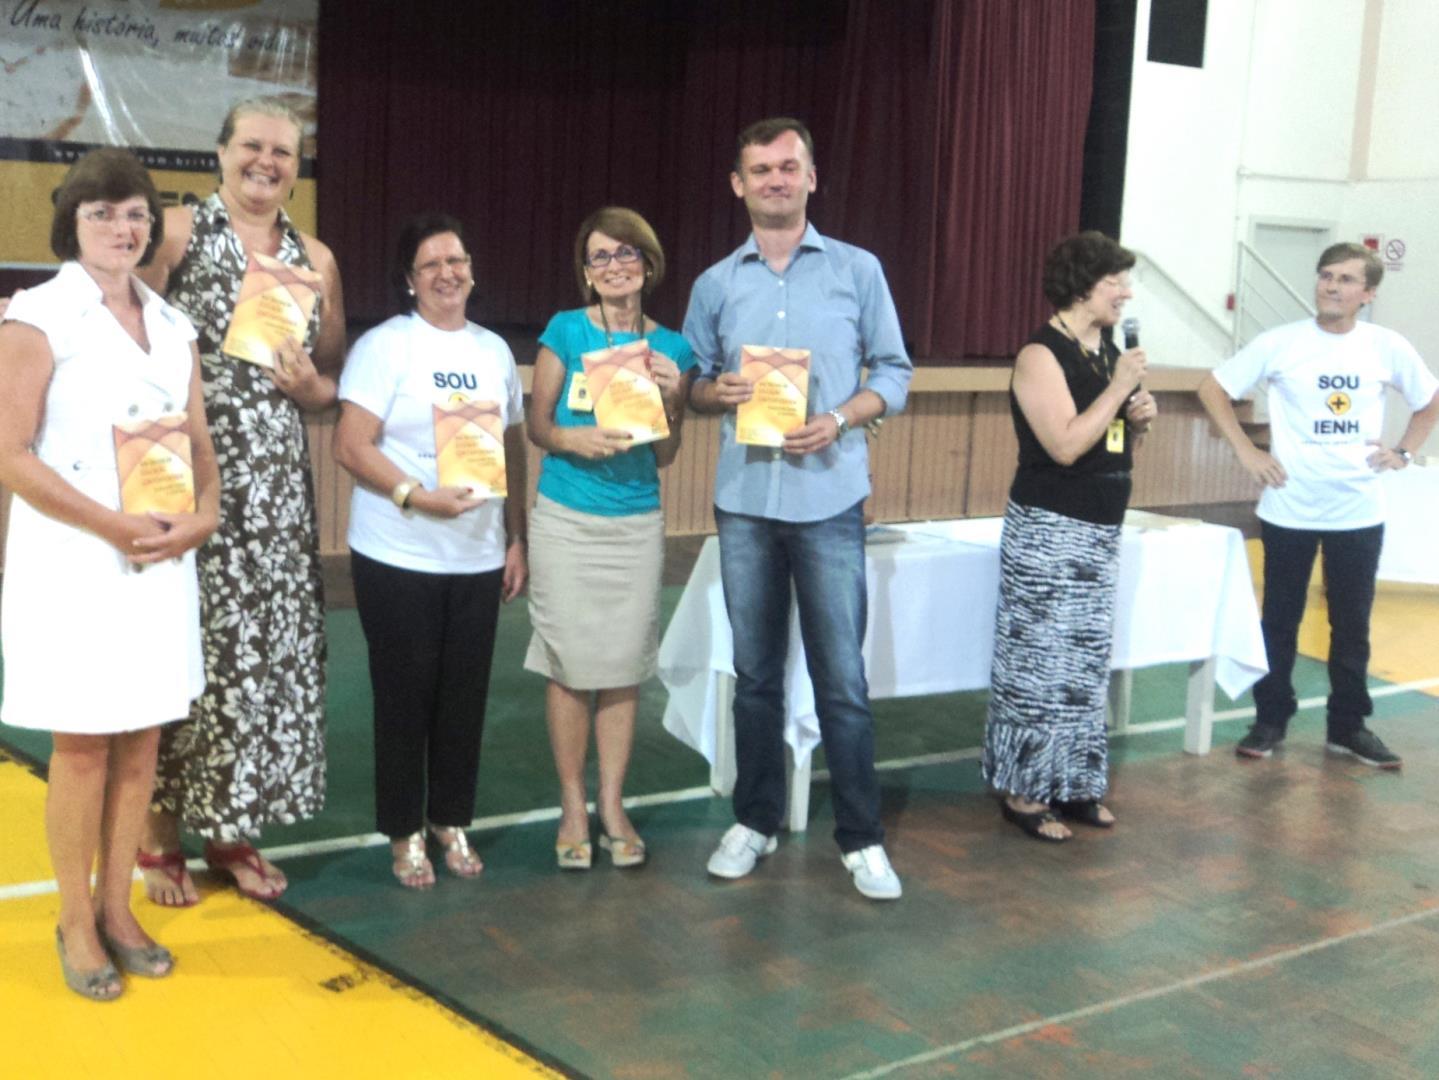 Professores da Faculdade IENH lançam livro sobre educação